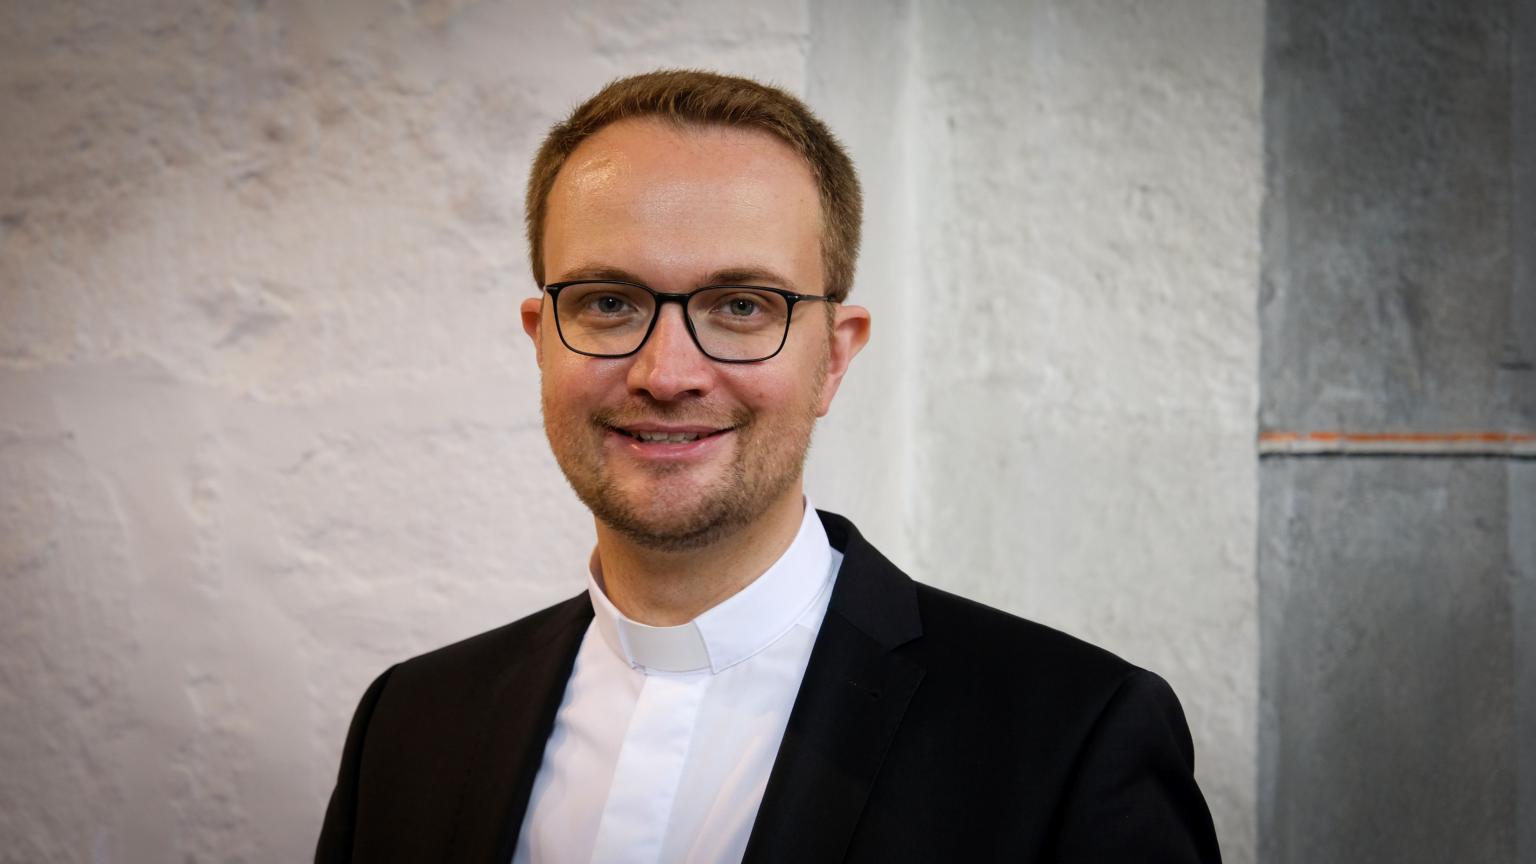 Ist weiterhin mit der Restaurierung beschäftigt: Pfarrer Dr. Andreas Möhlig. (c) Bistum Aachen / Andreas Steindl